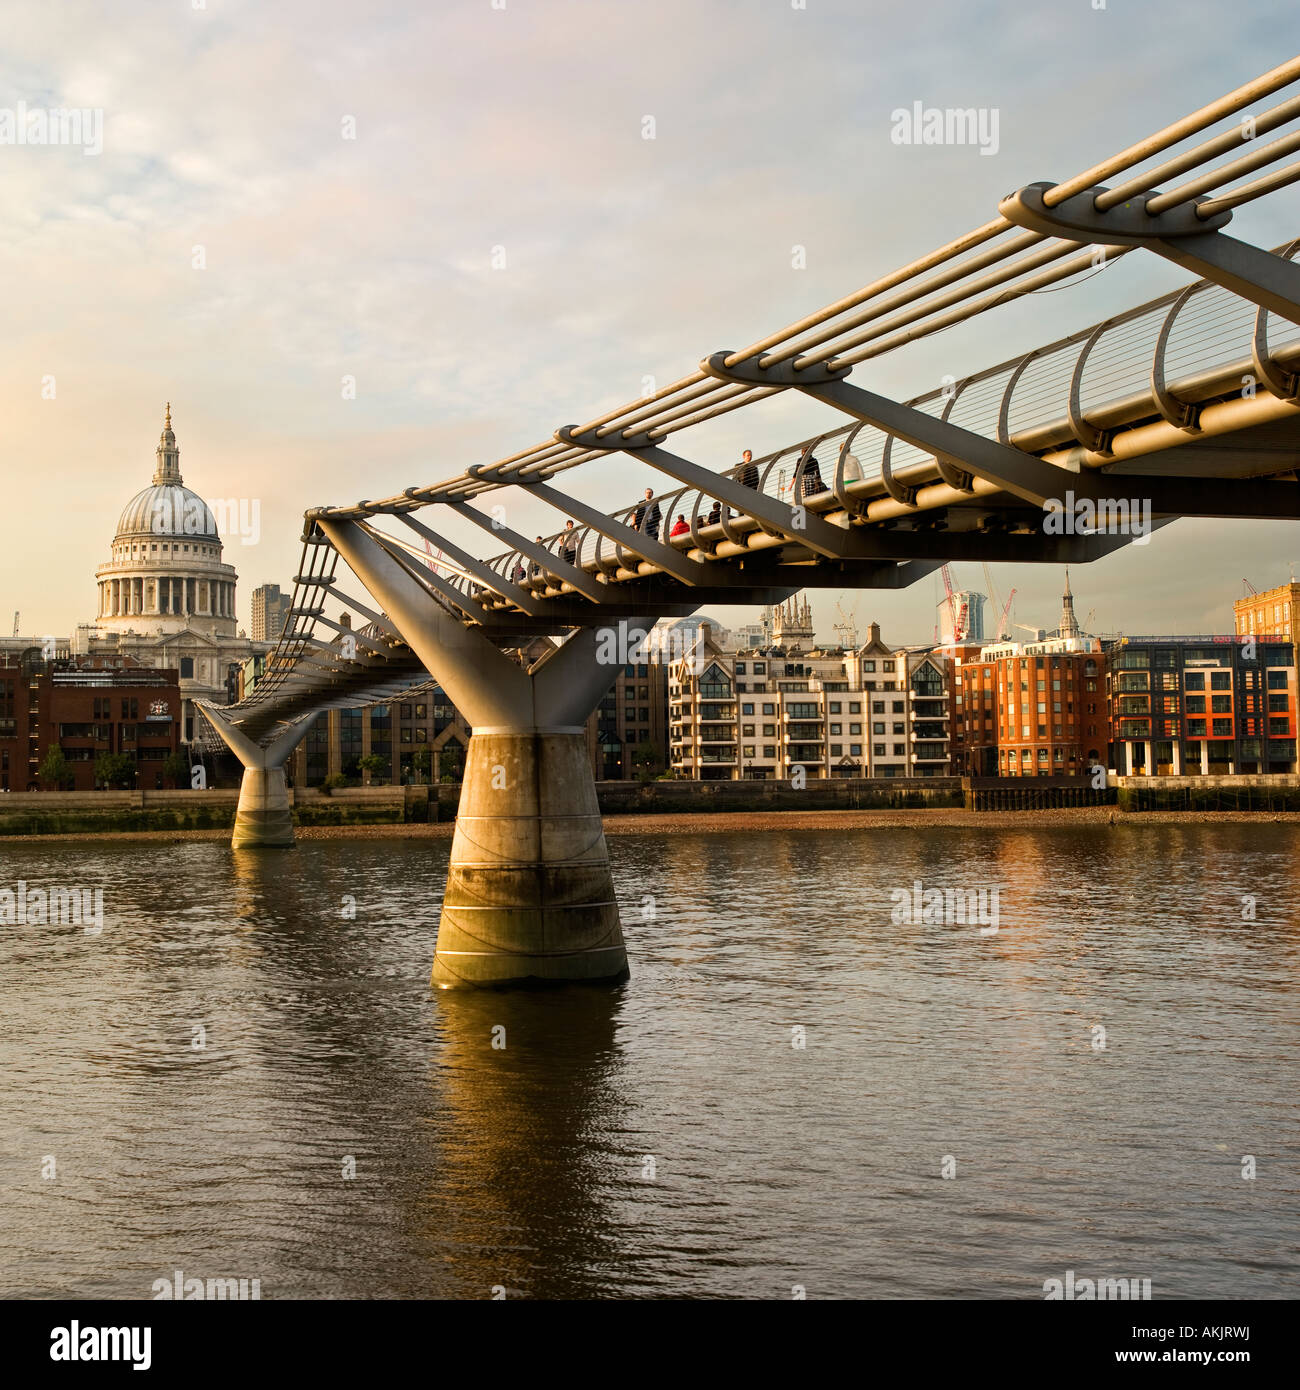 Millennium-Brücke von St. Pauls London No bedeutet Model-Release als Rückansicht, Unschärfe, Entfernung keine Personen erkennbar Stockfoto